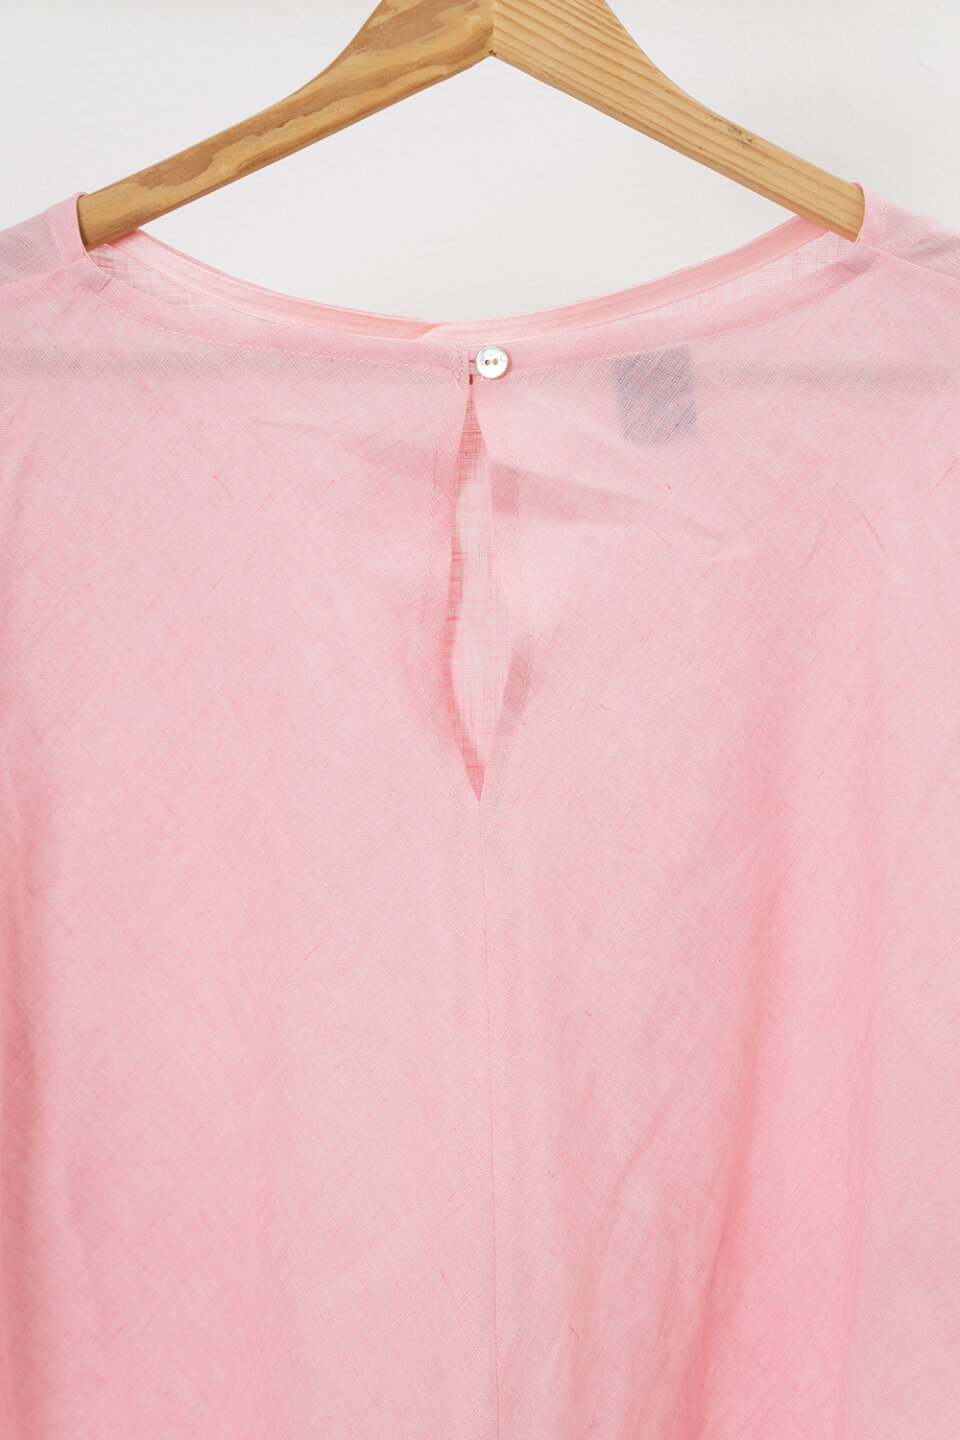 Camicia Giulia Lunga rosa 3 - Officinae